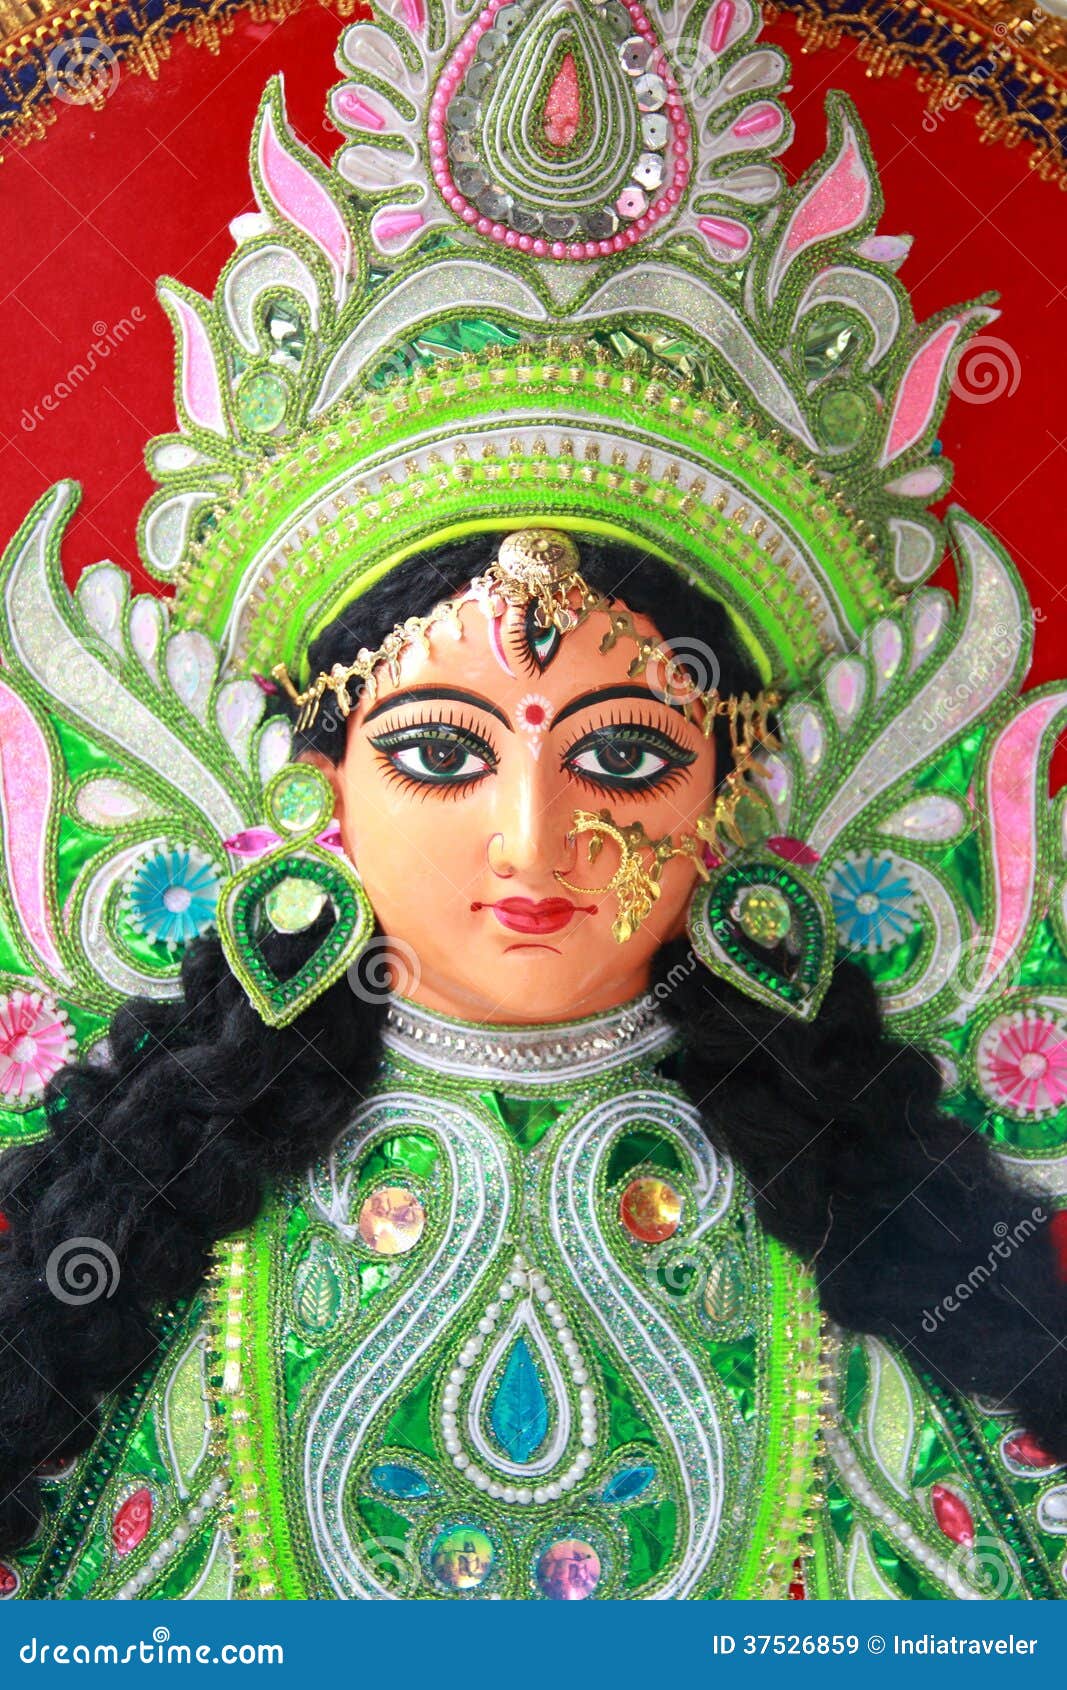 Idols of Goddess Durga. stock image. Image of asia, good - 37526859